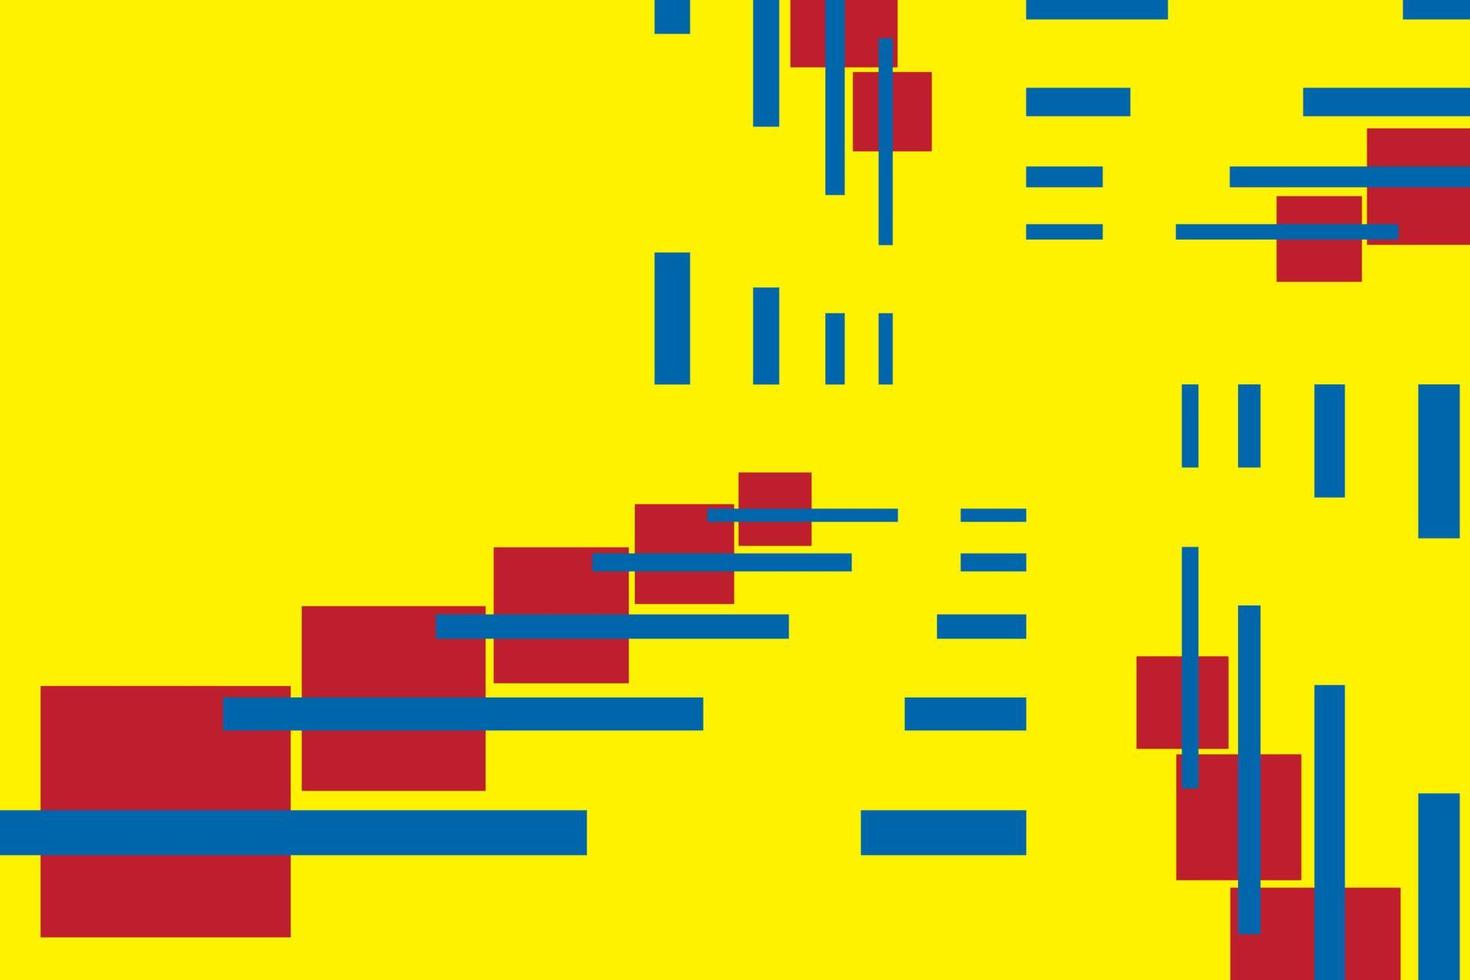 primario colores fondo, azul, rojo, y amarillo en rectángulo forma. vector ilustración.